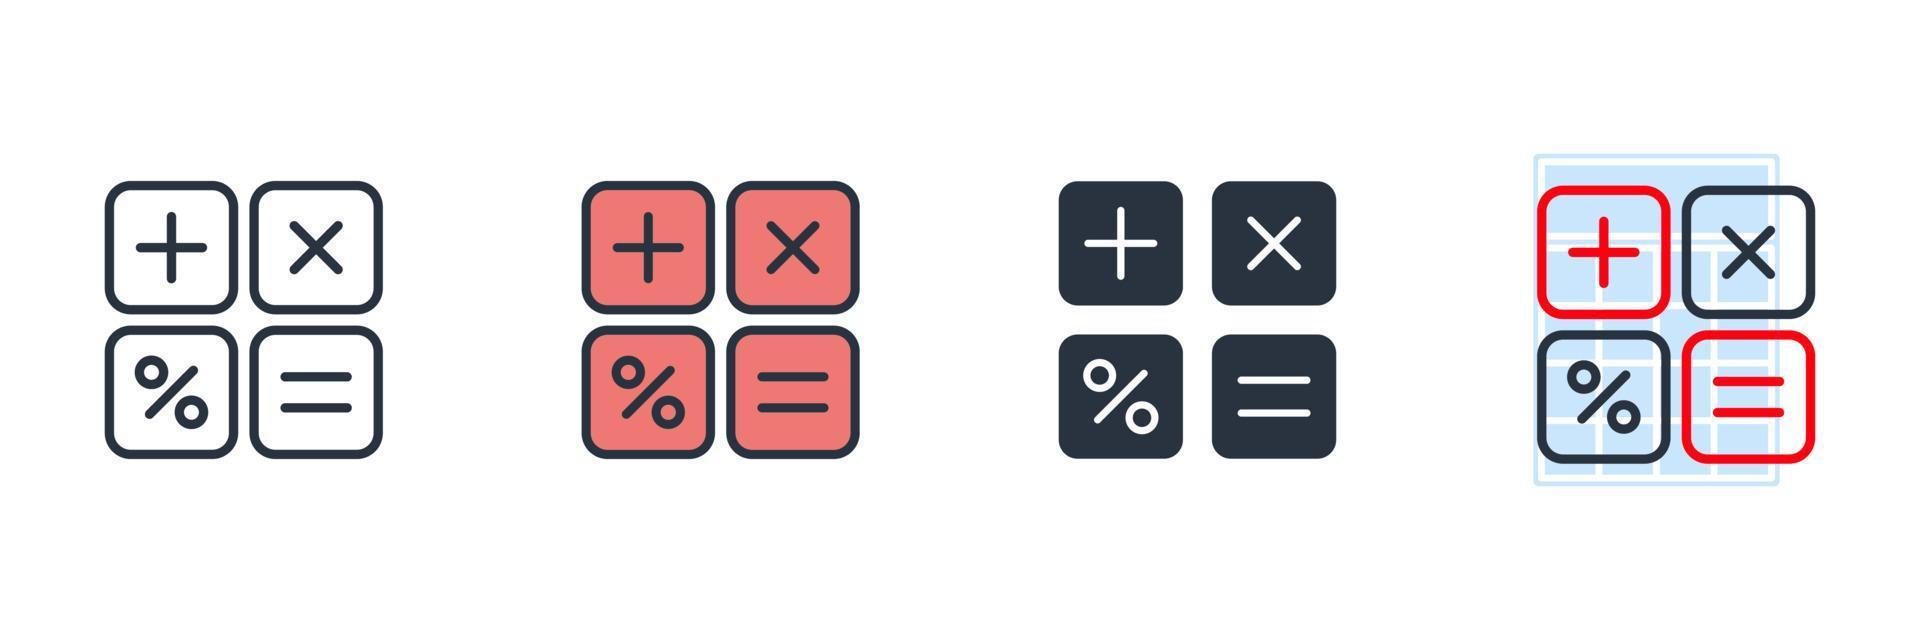 Taschenrechner-Symbol-Logo-Vektor-Illustration. Finanzsymbolvorlage für Grafik- und Webdesign-Sammlung vektor